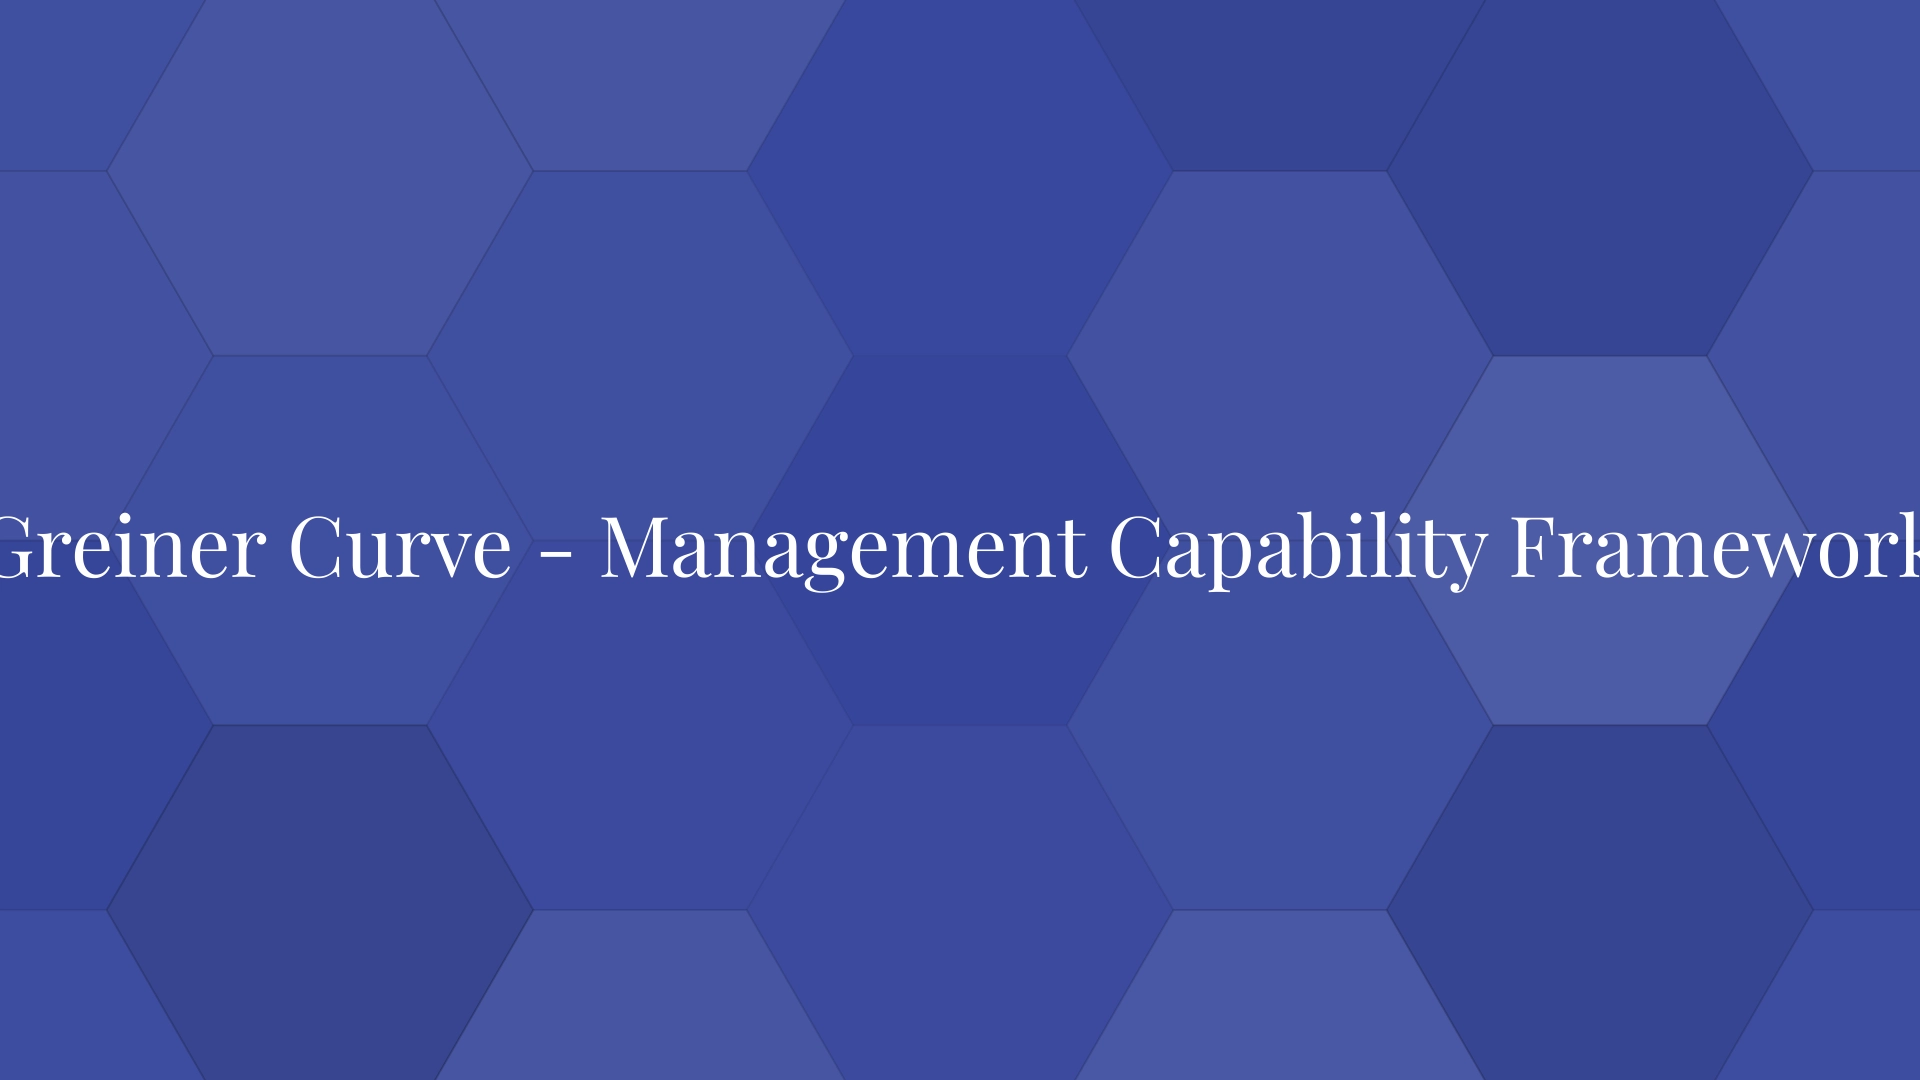 Curva de Greiner: marco de capacidad de gestión